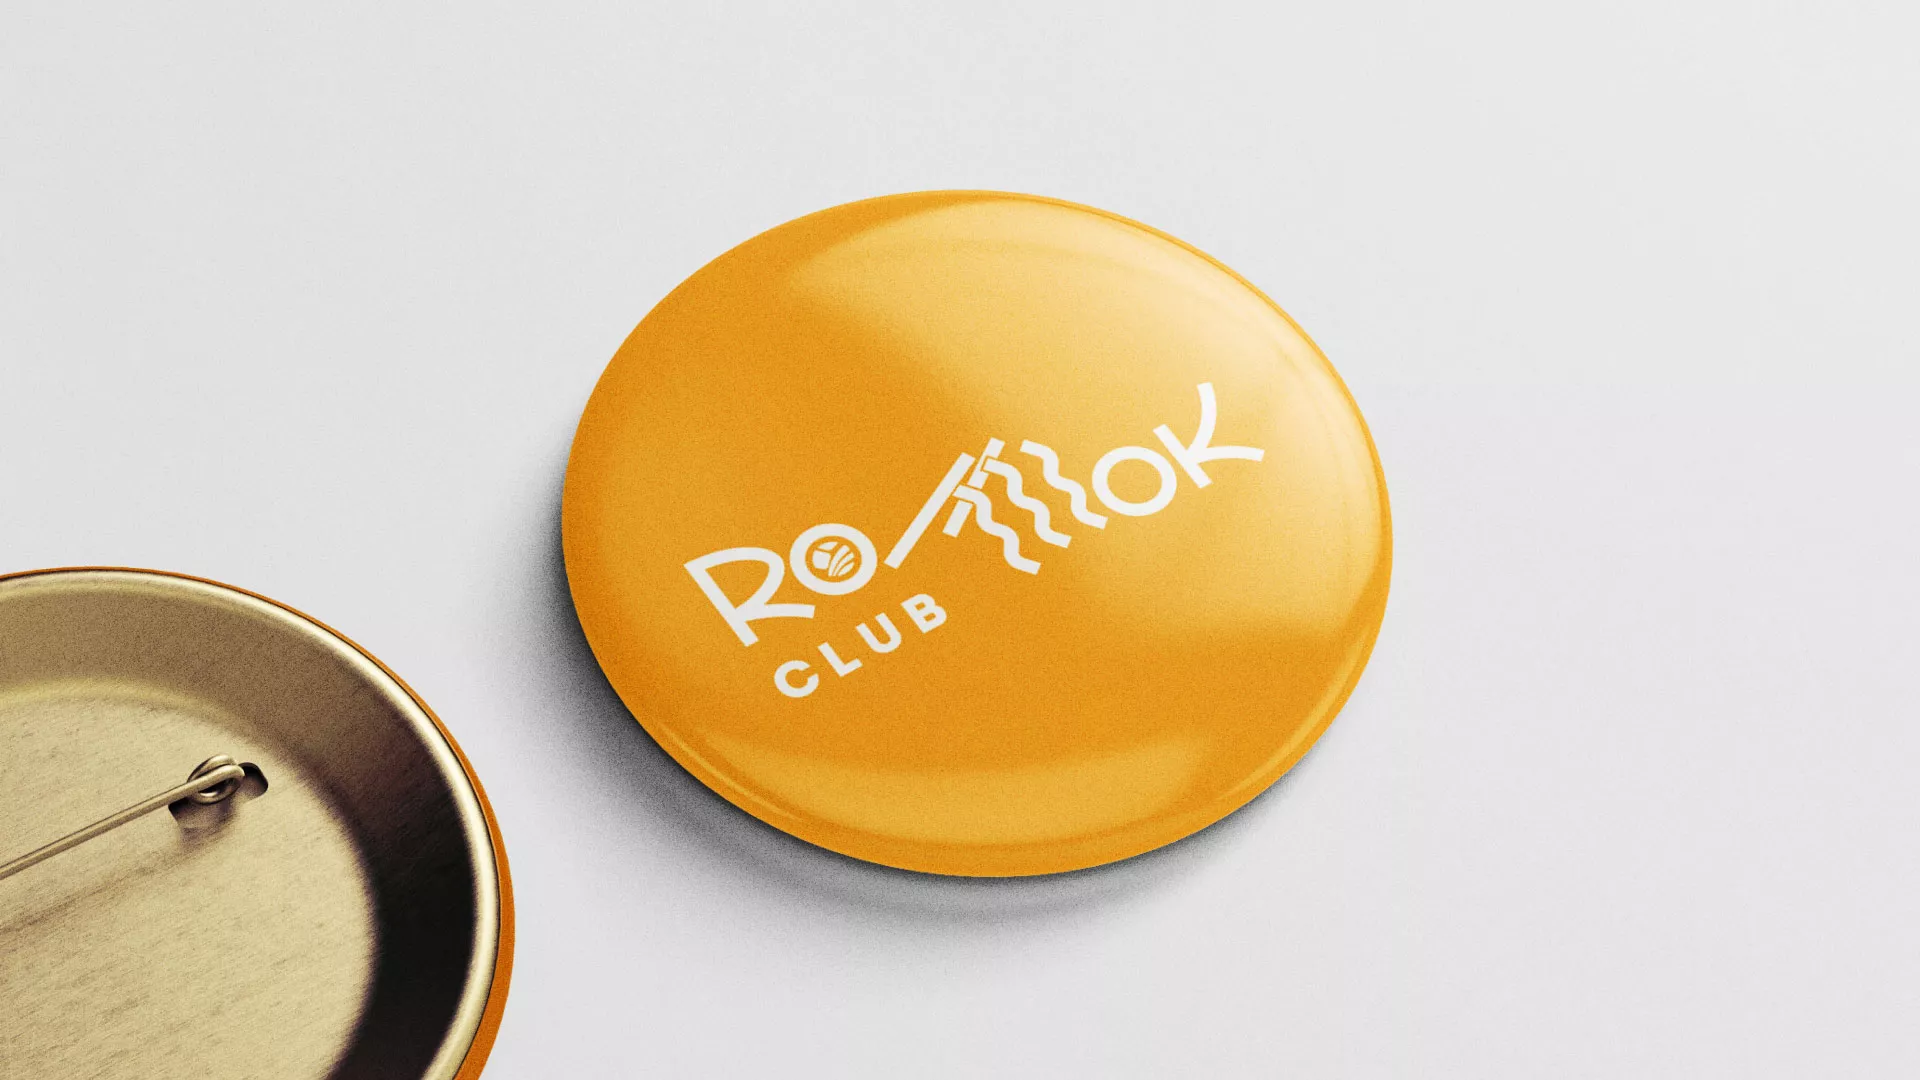 Создание логотипа суши-бара «Roll Wok Club» в Одинцово